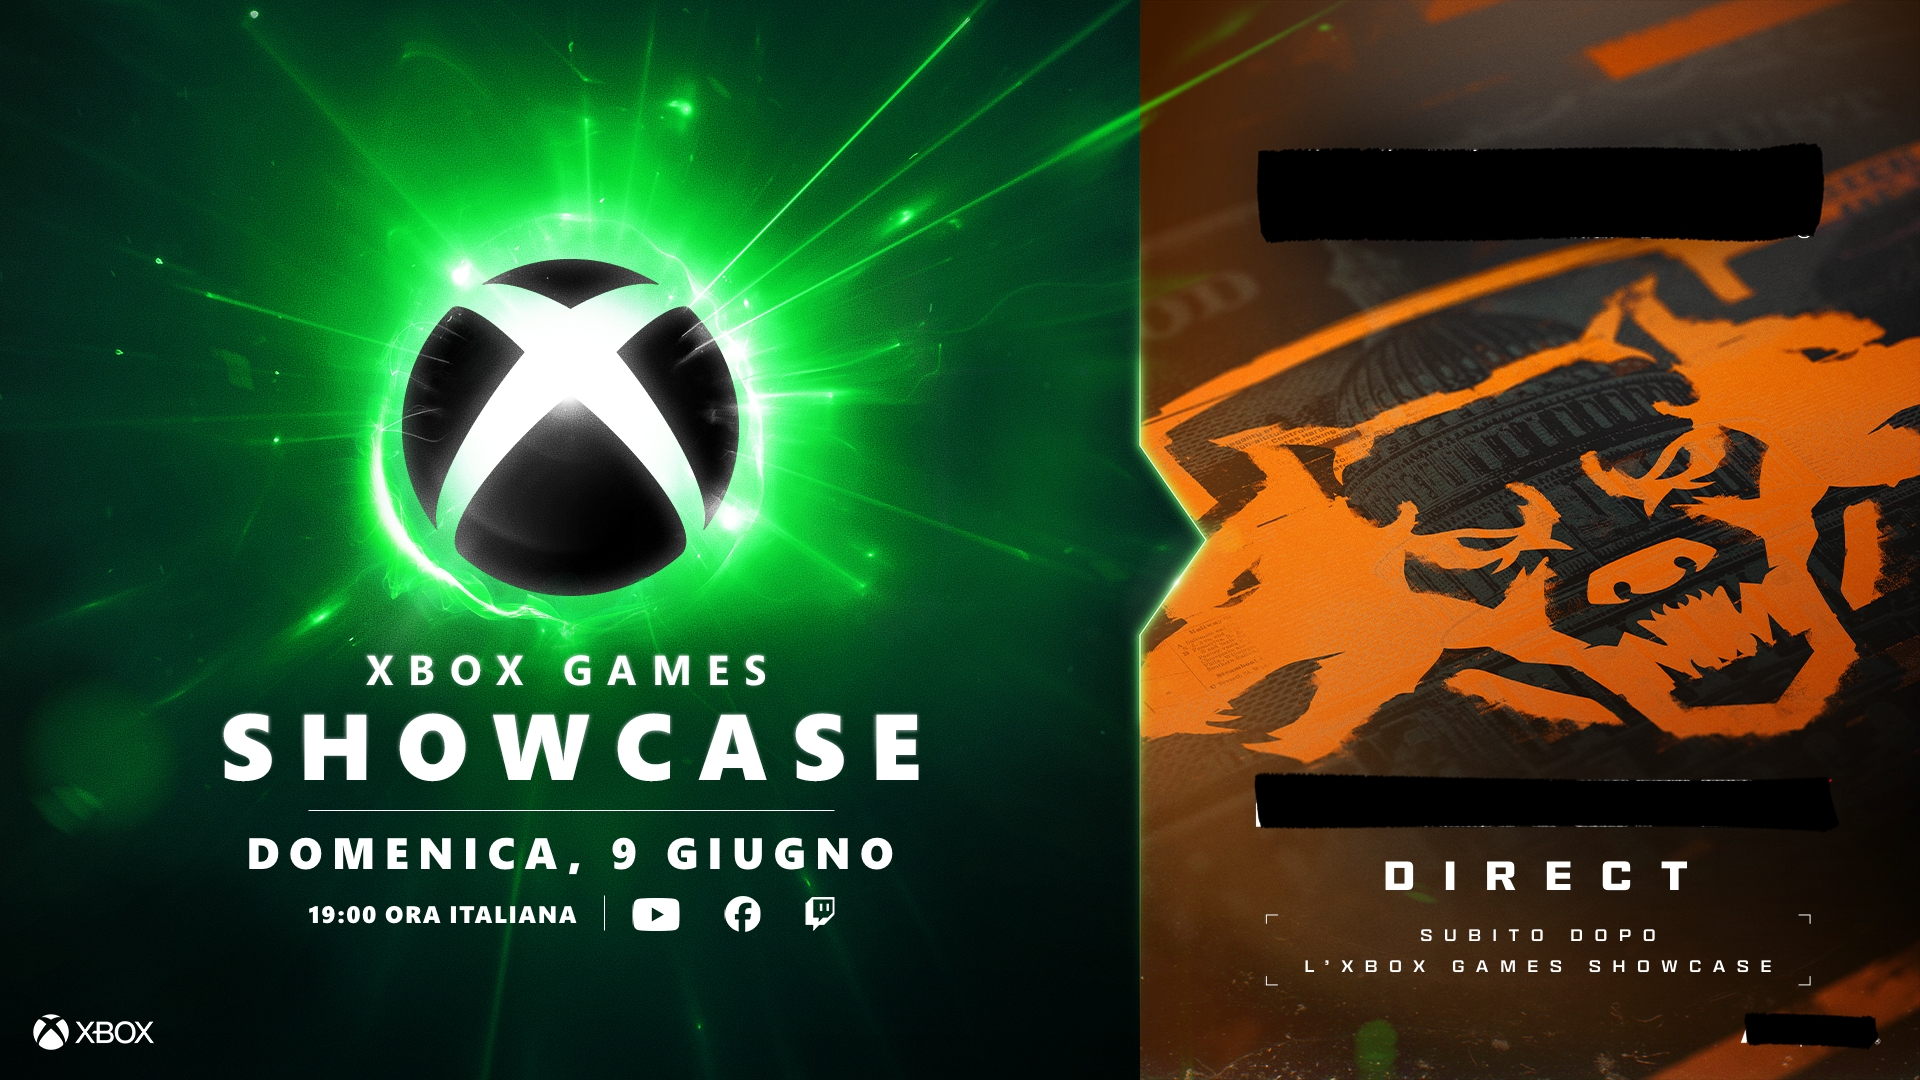 Evento Xbox Games Showcase il 9 giugno + Evento Direct ancora segreto